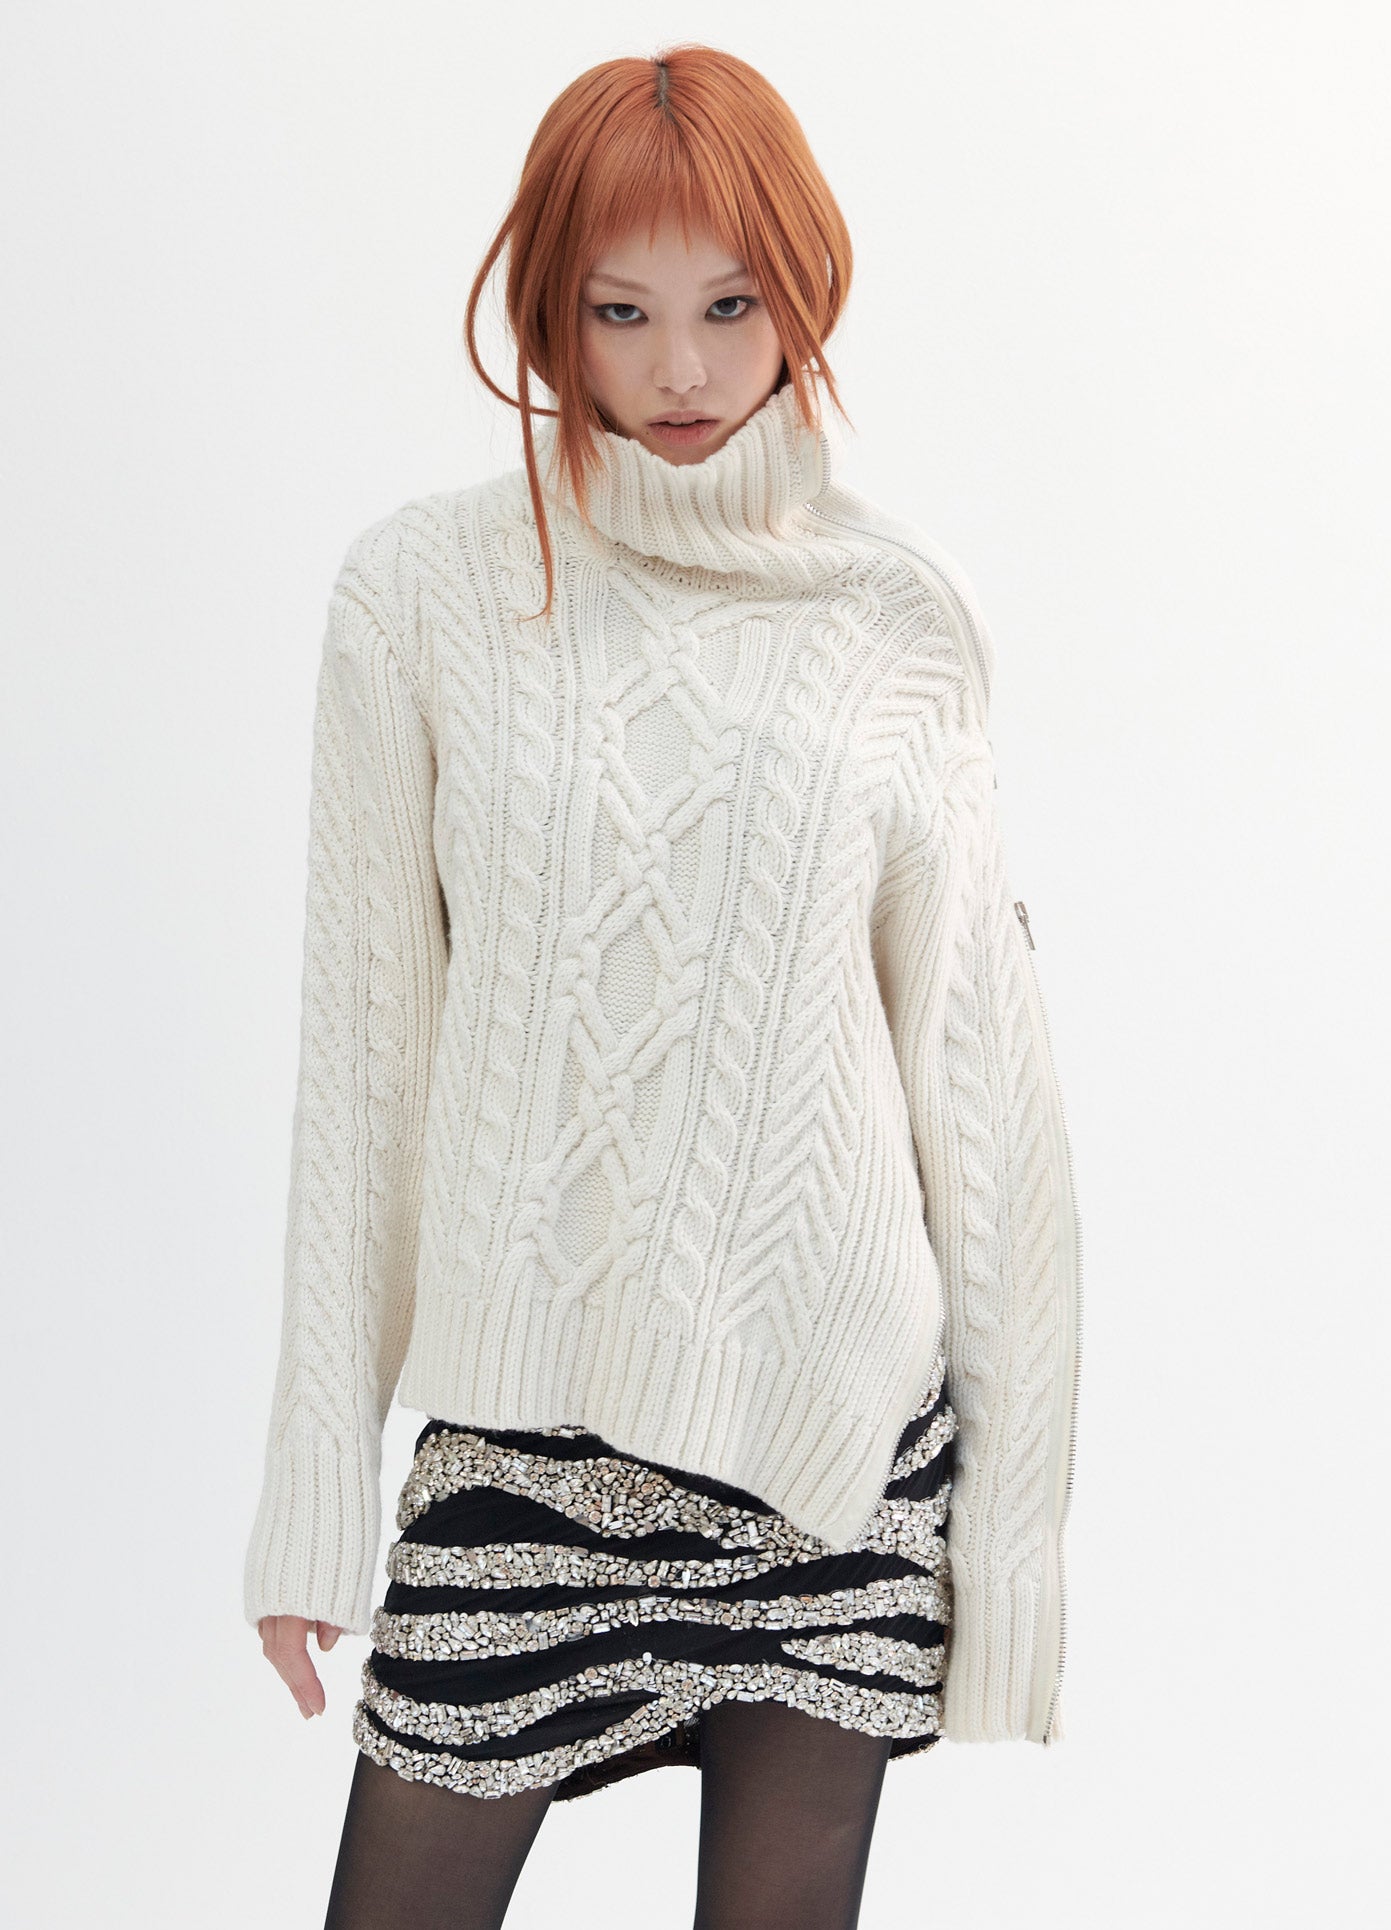 Shop Knitwear l MONSE Official Site